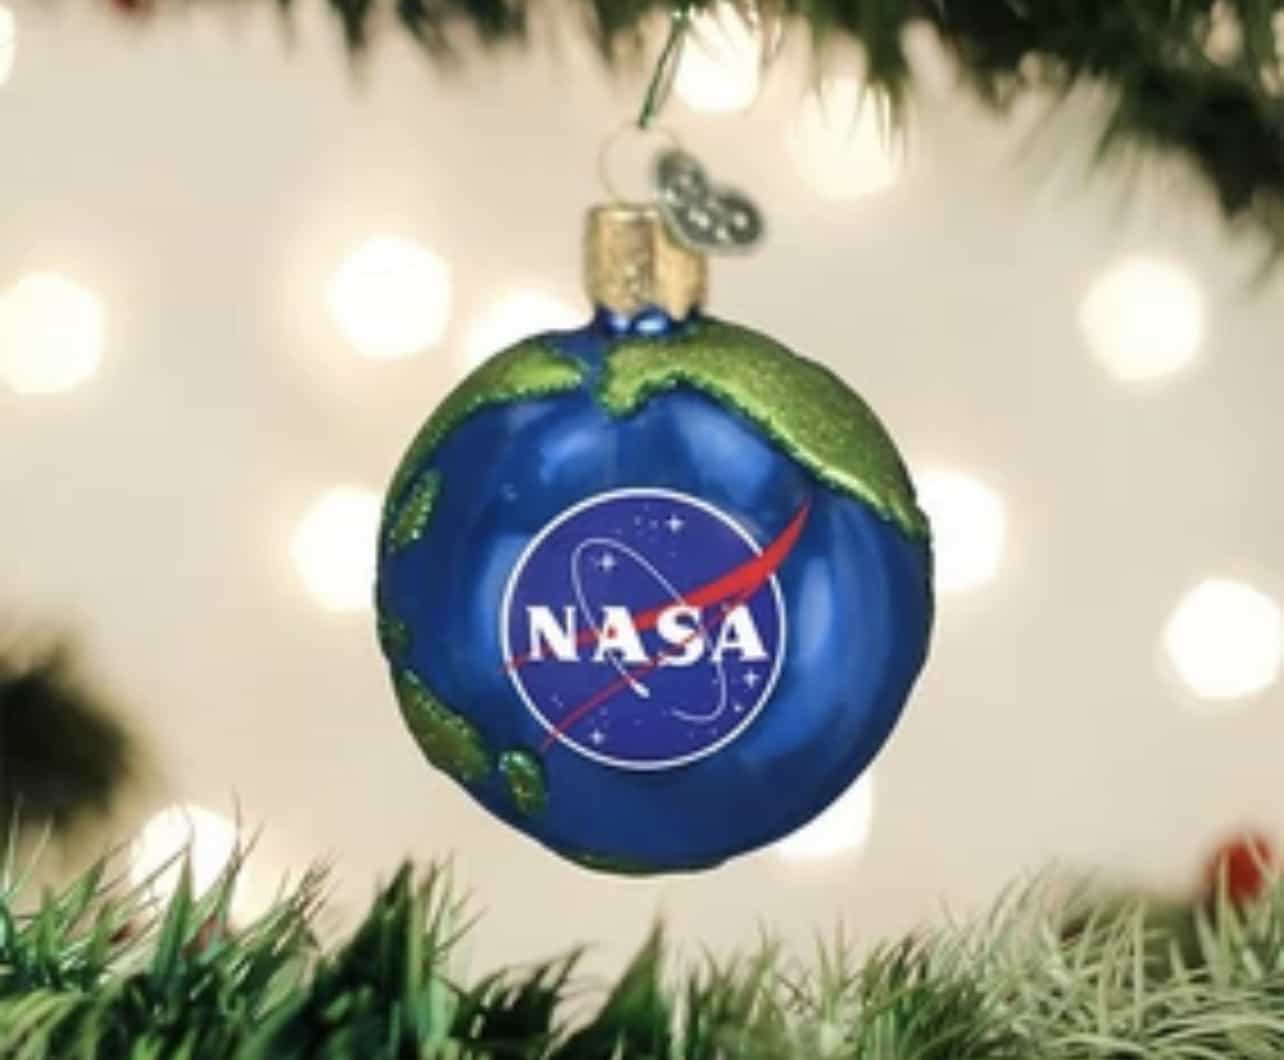 NASA 25122021 - Androiditaly.com